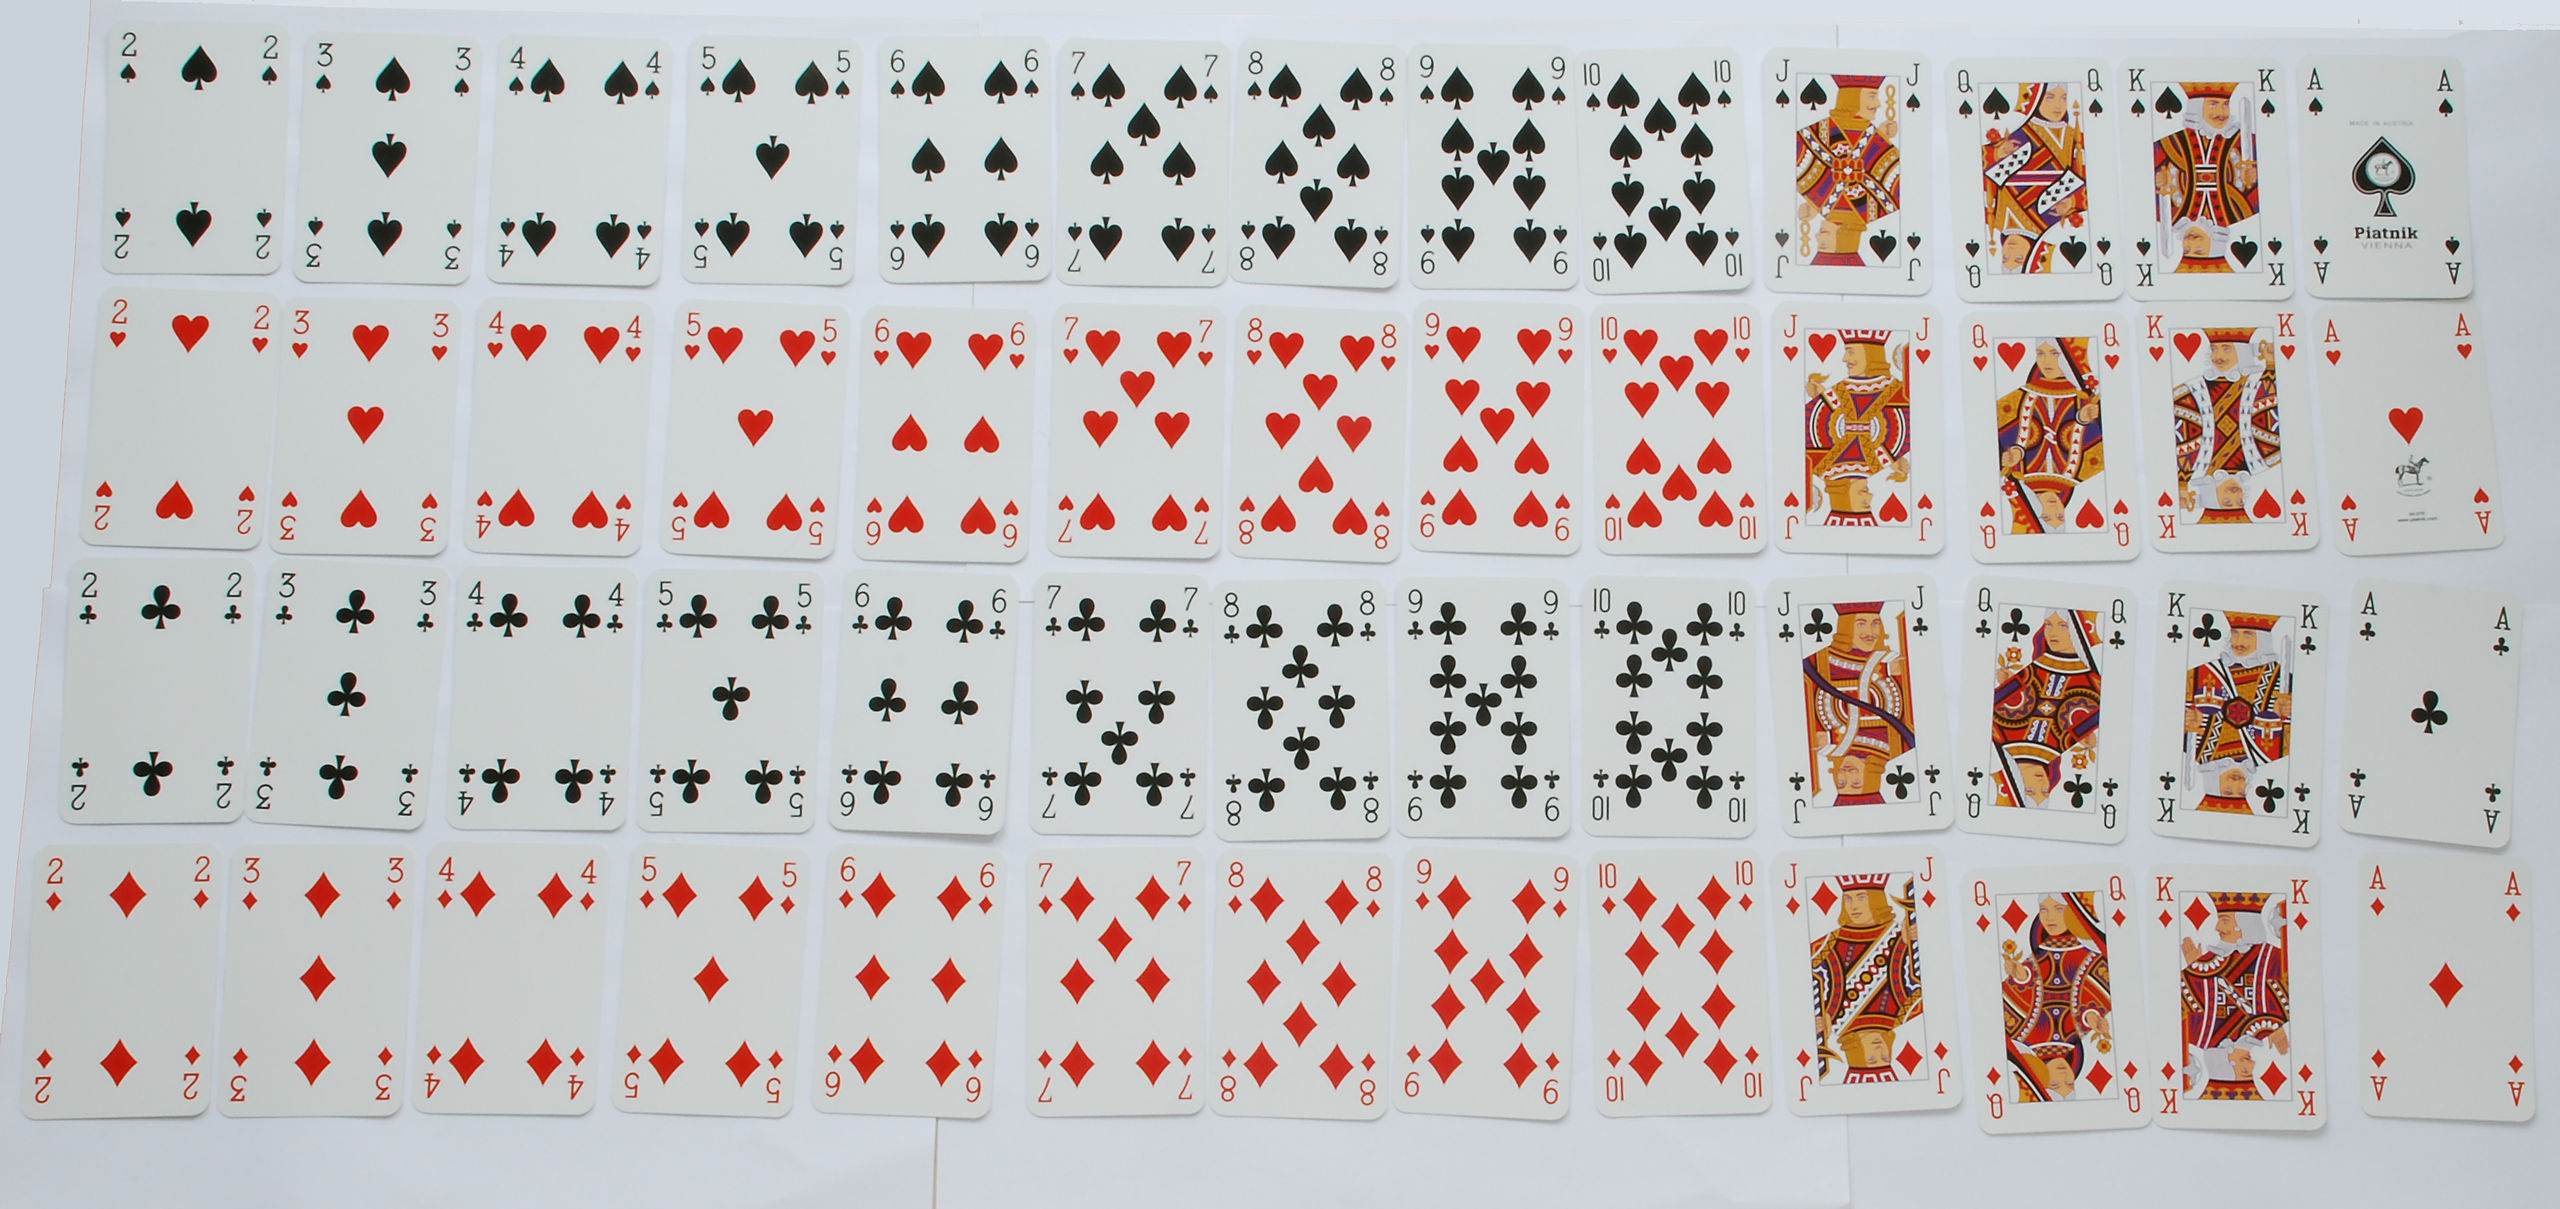 Standard 52 card deck